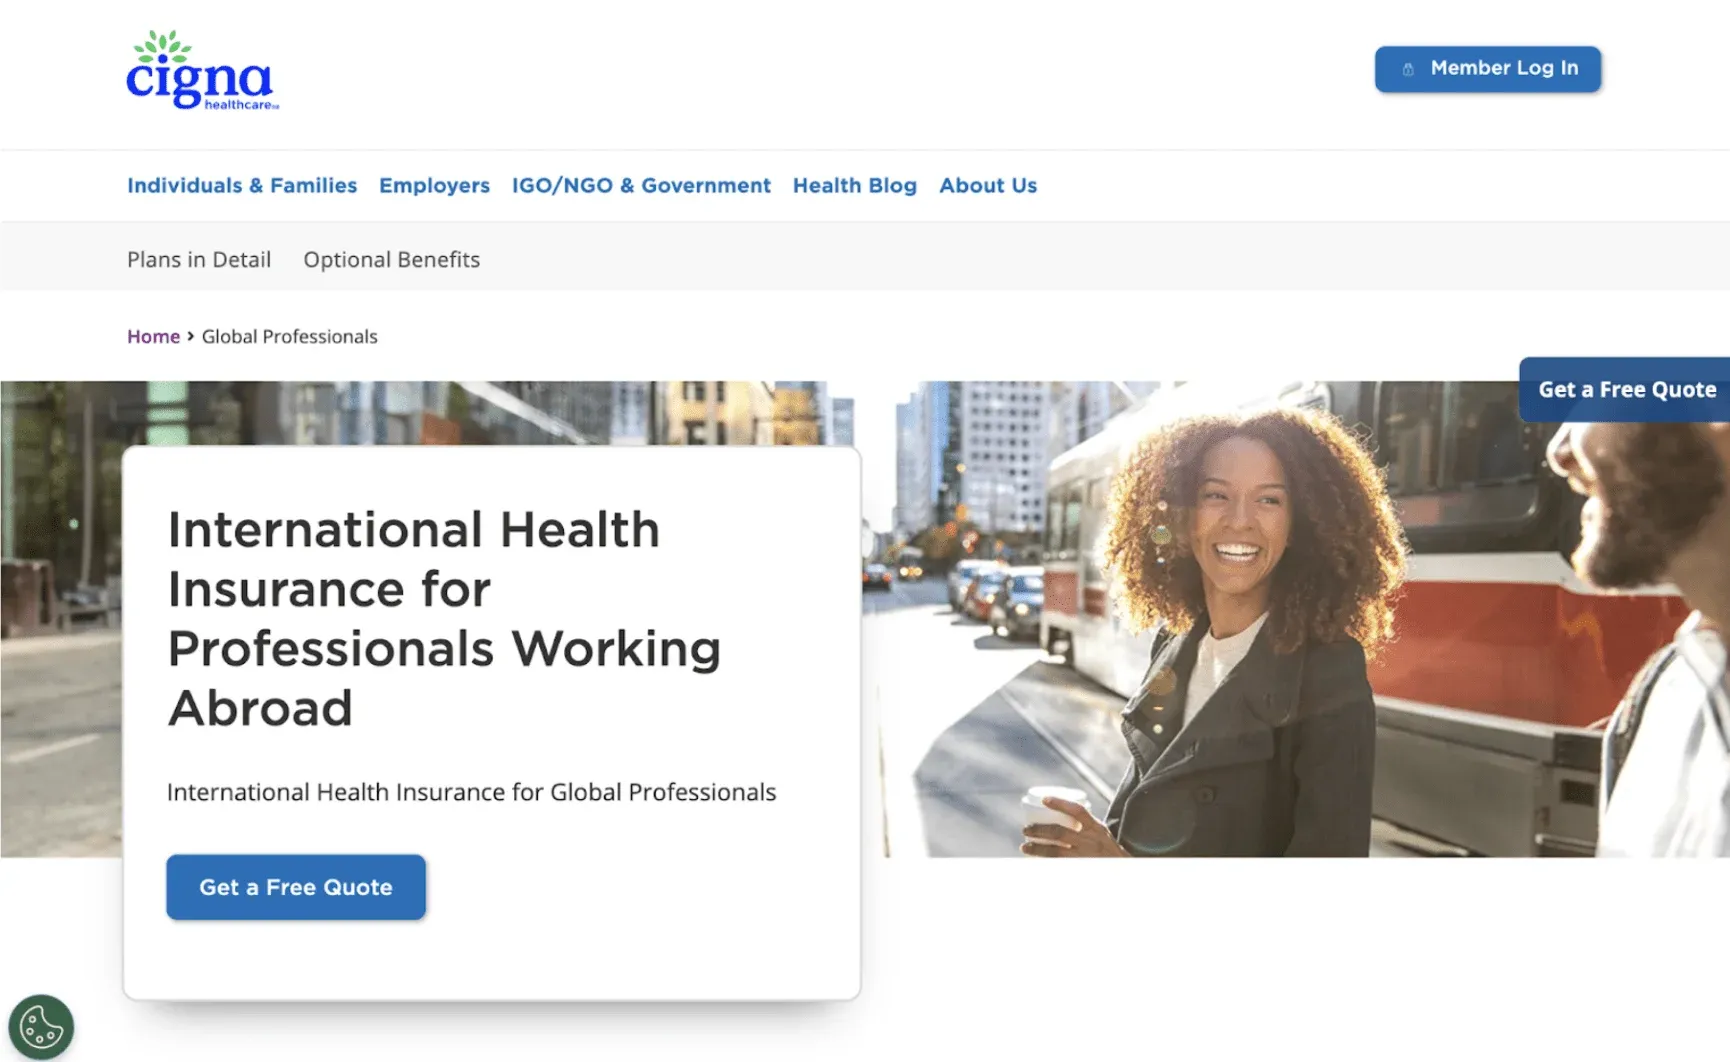 Cigna Global Health Insurance